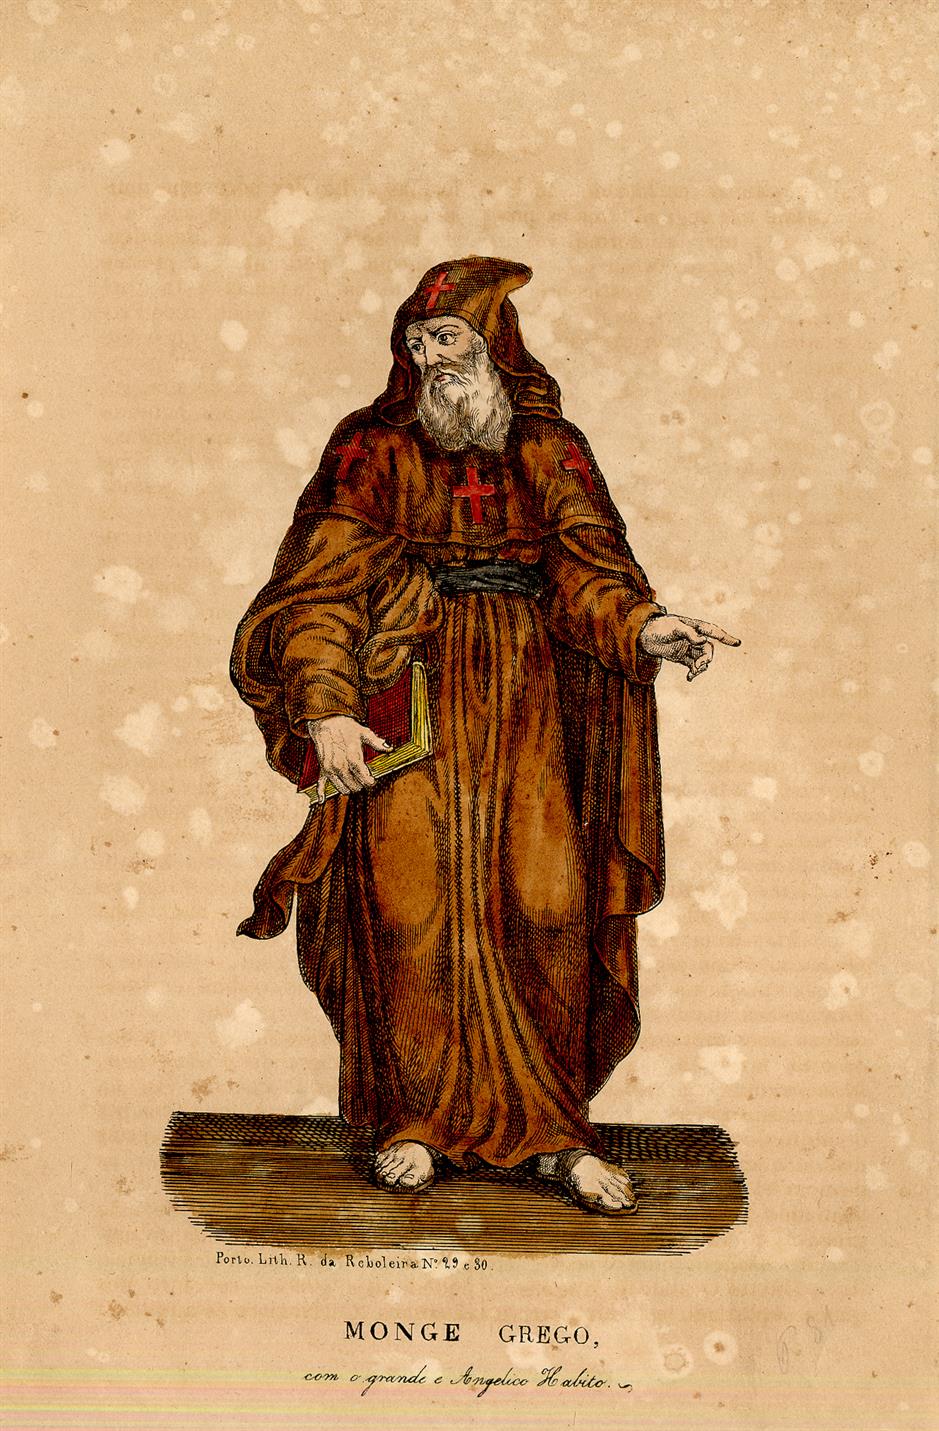 Monge grego, com o grande e angélico hábito